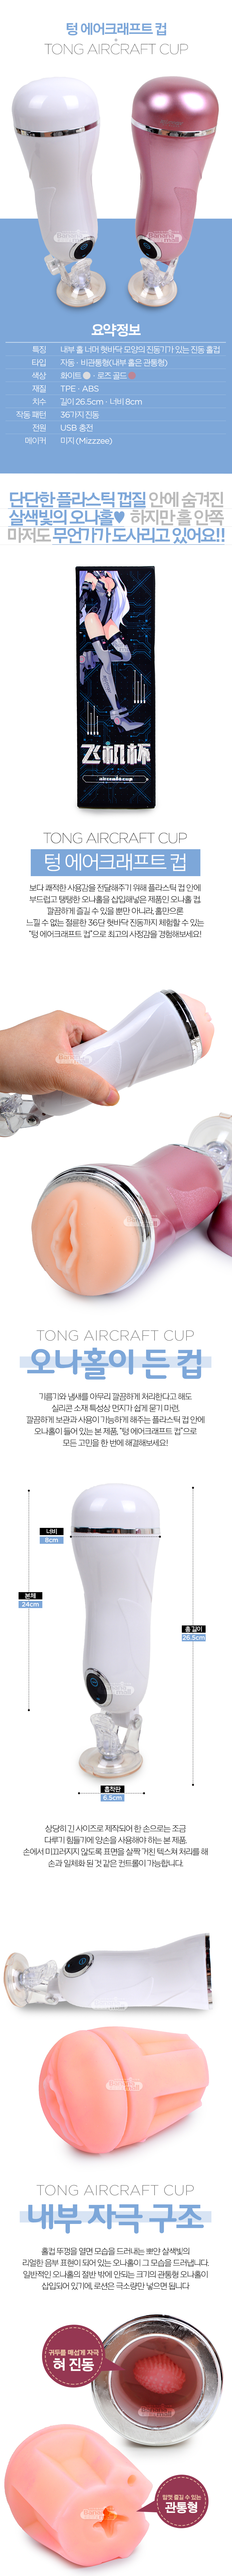 [36단 진동] 텅 에어크래프트 컵(Tong aircraft cup)